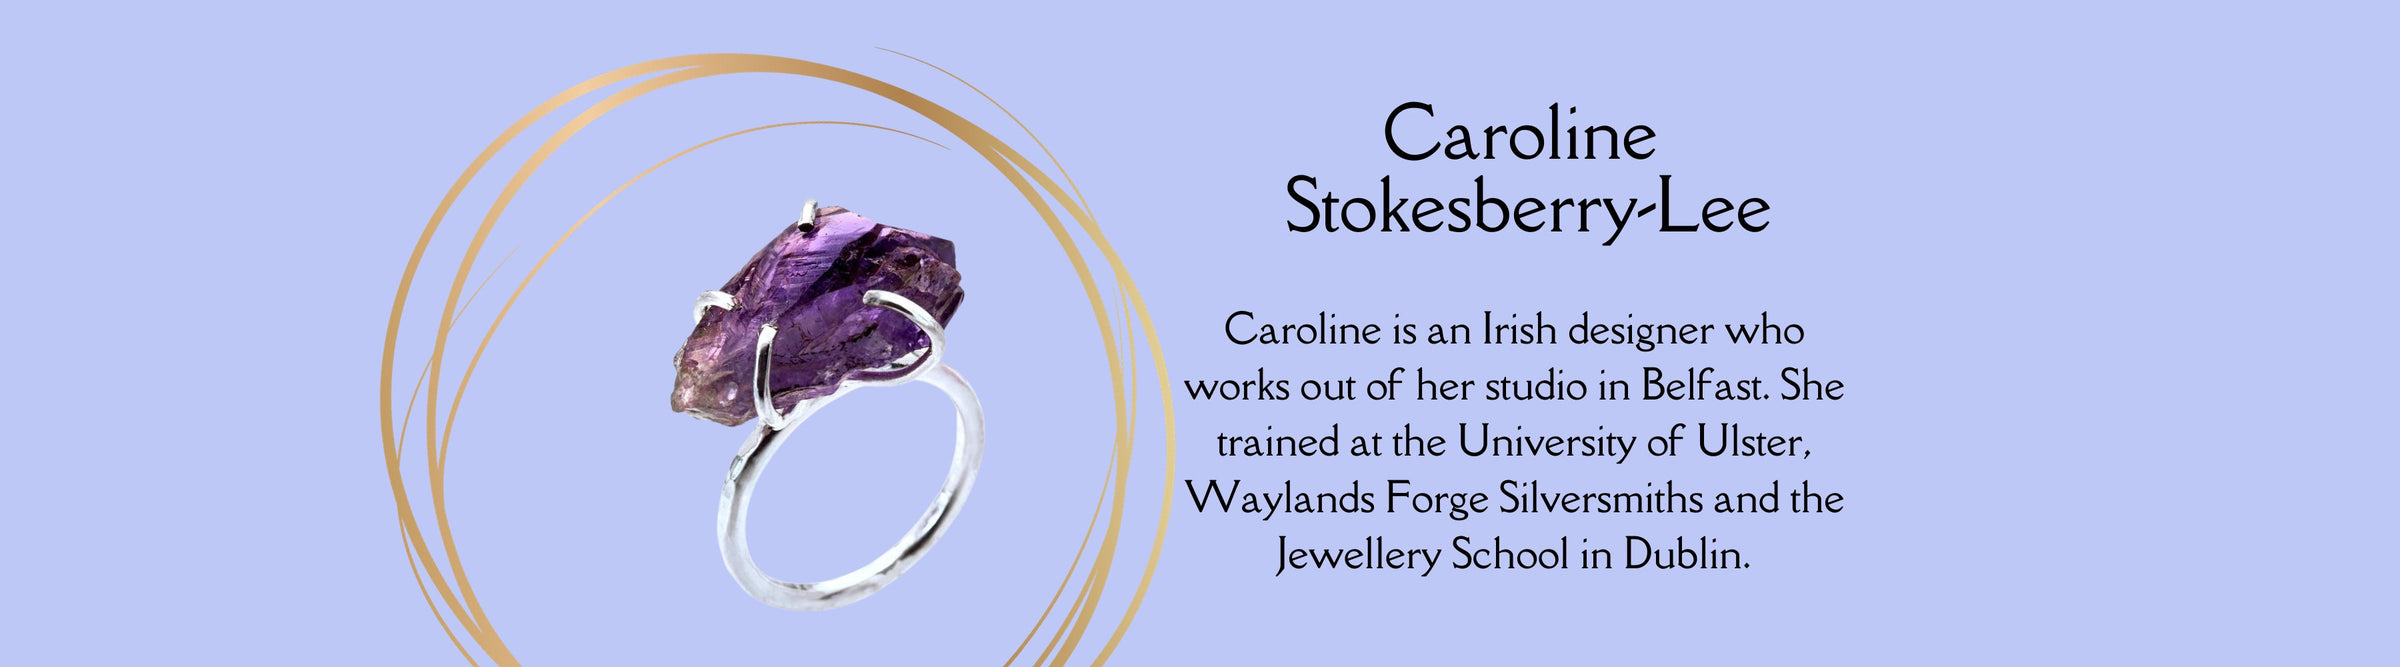 Caroline Stokesberry-Lee